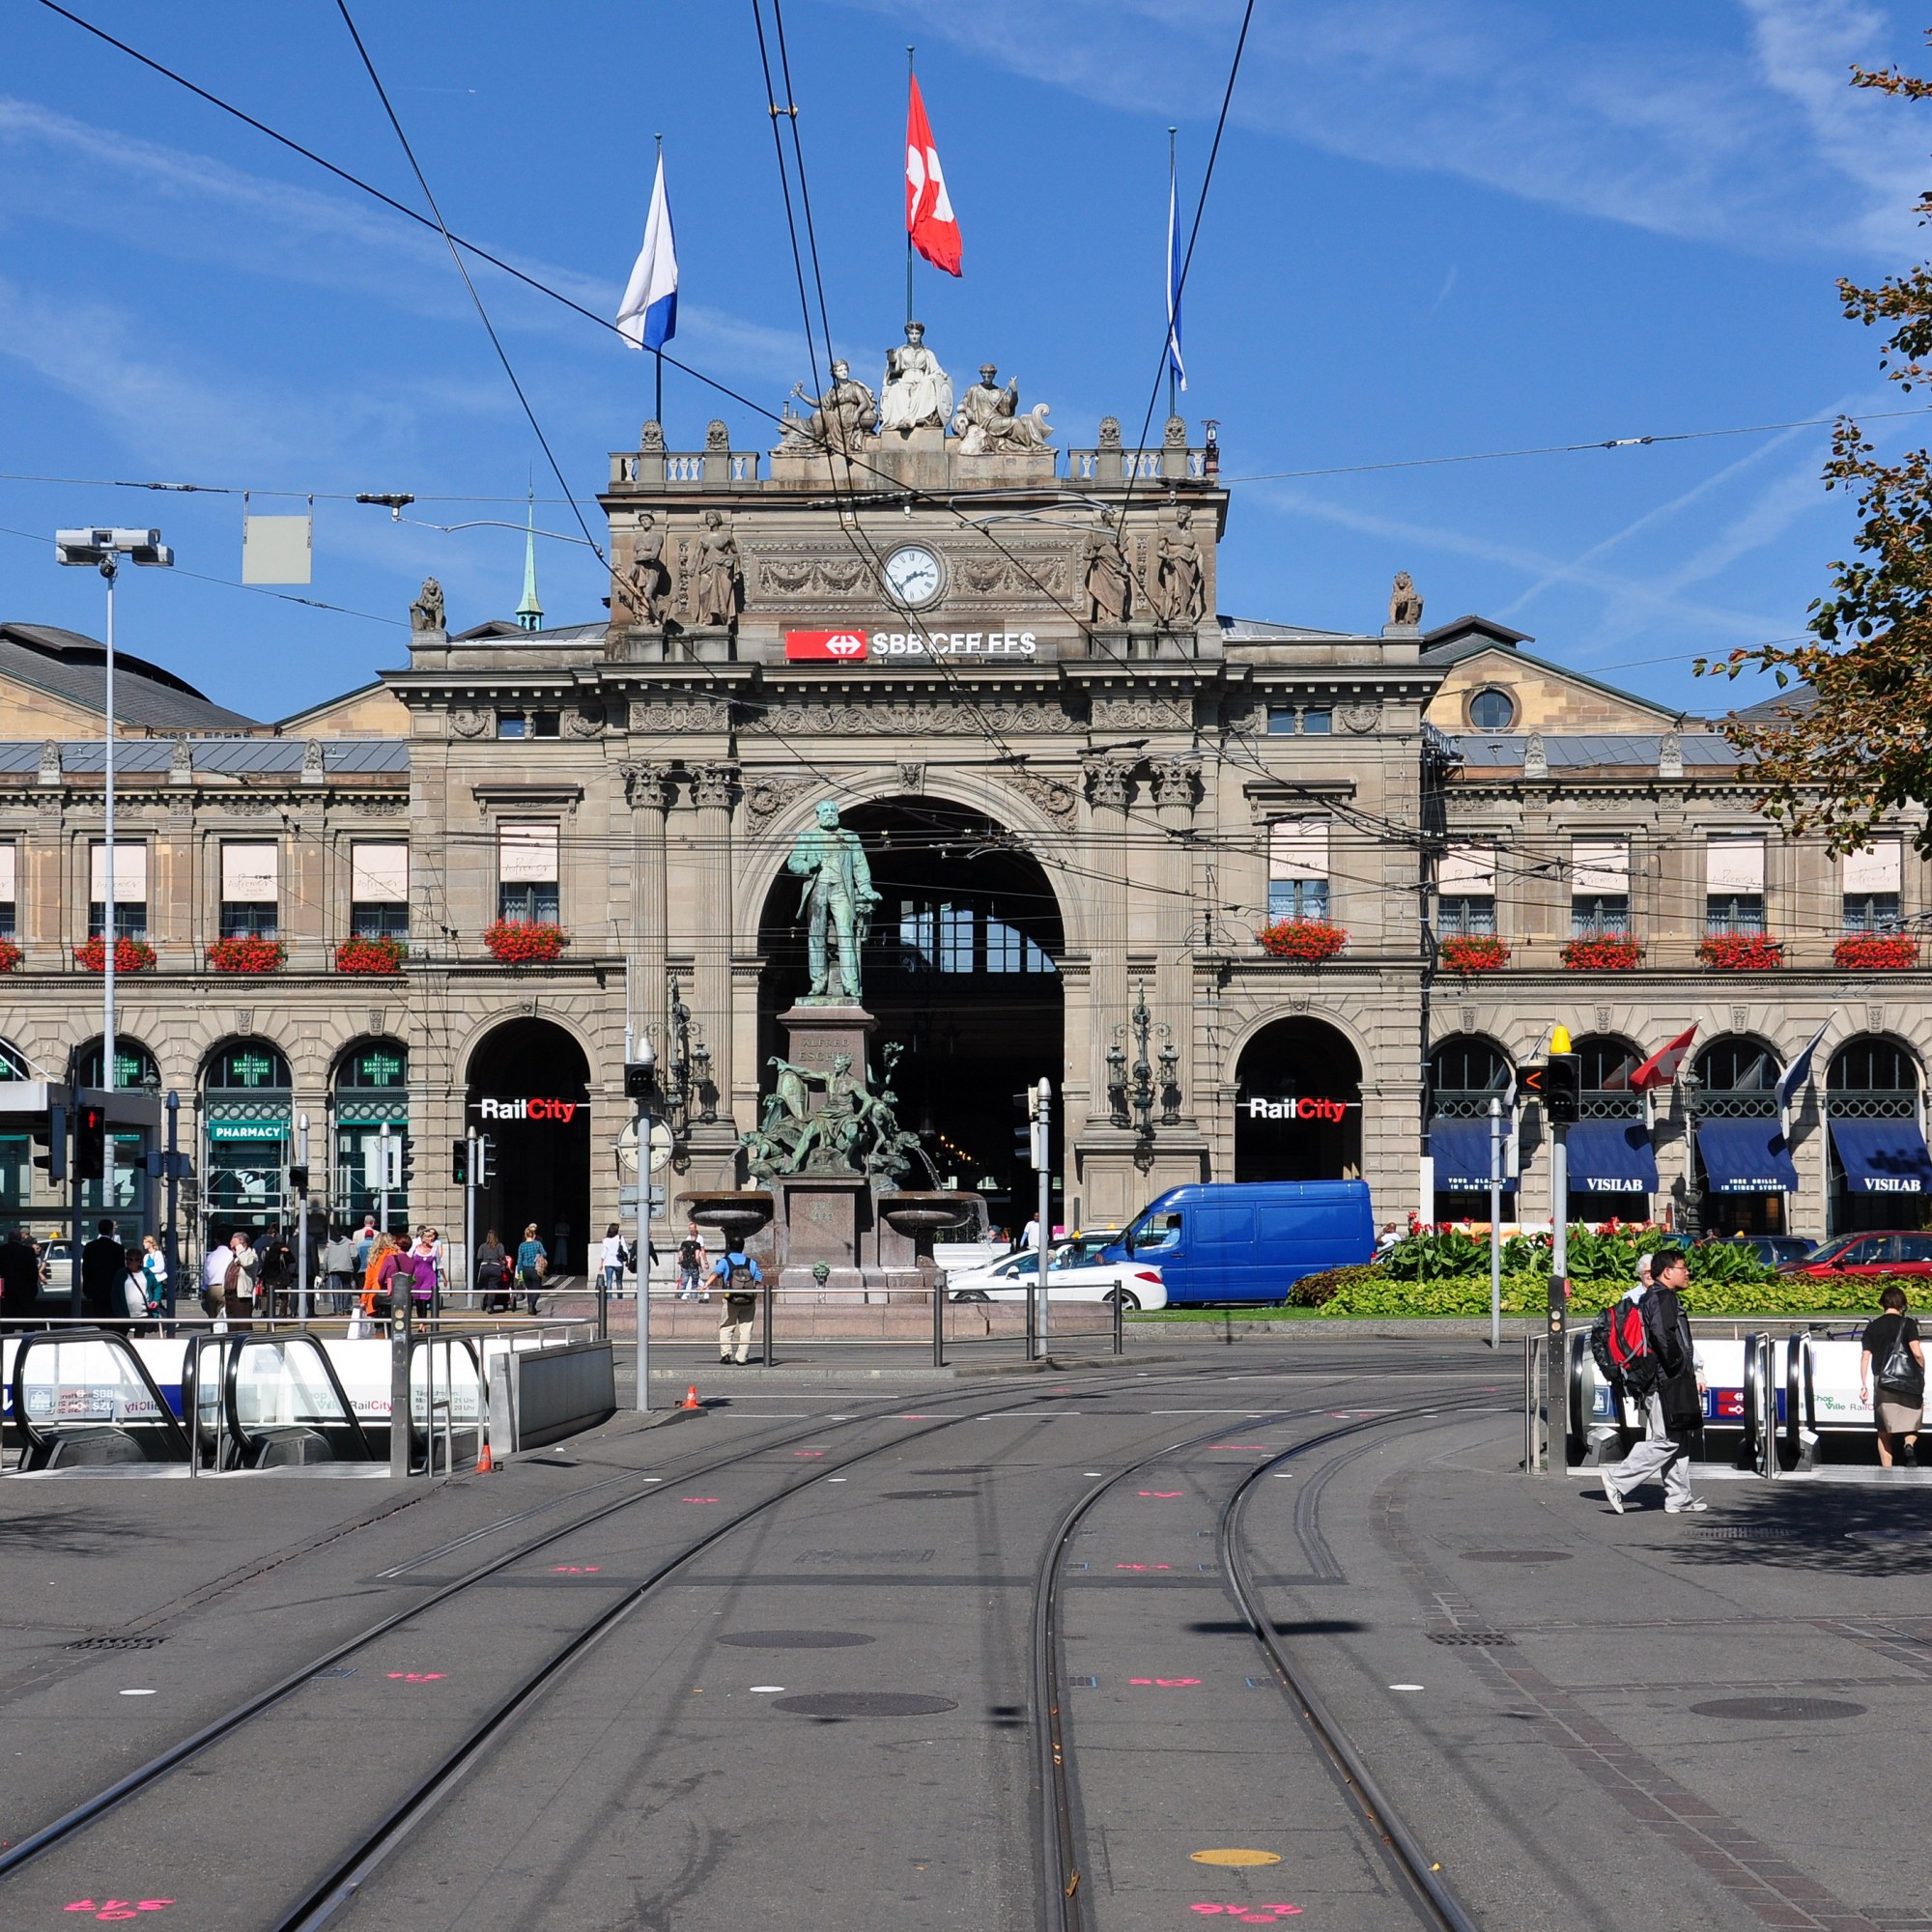 Hauptbahnhof (Main train station), Zurich